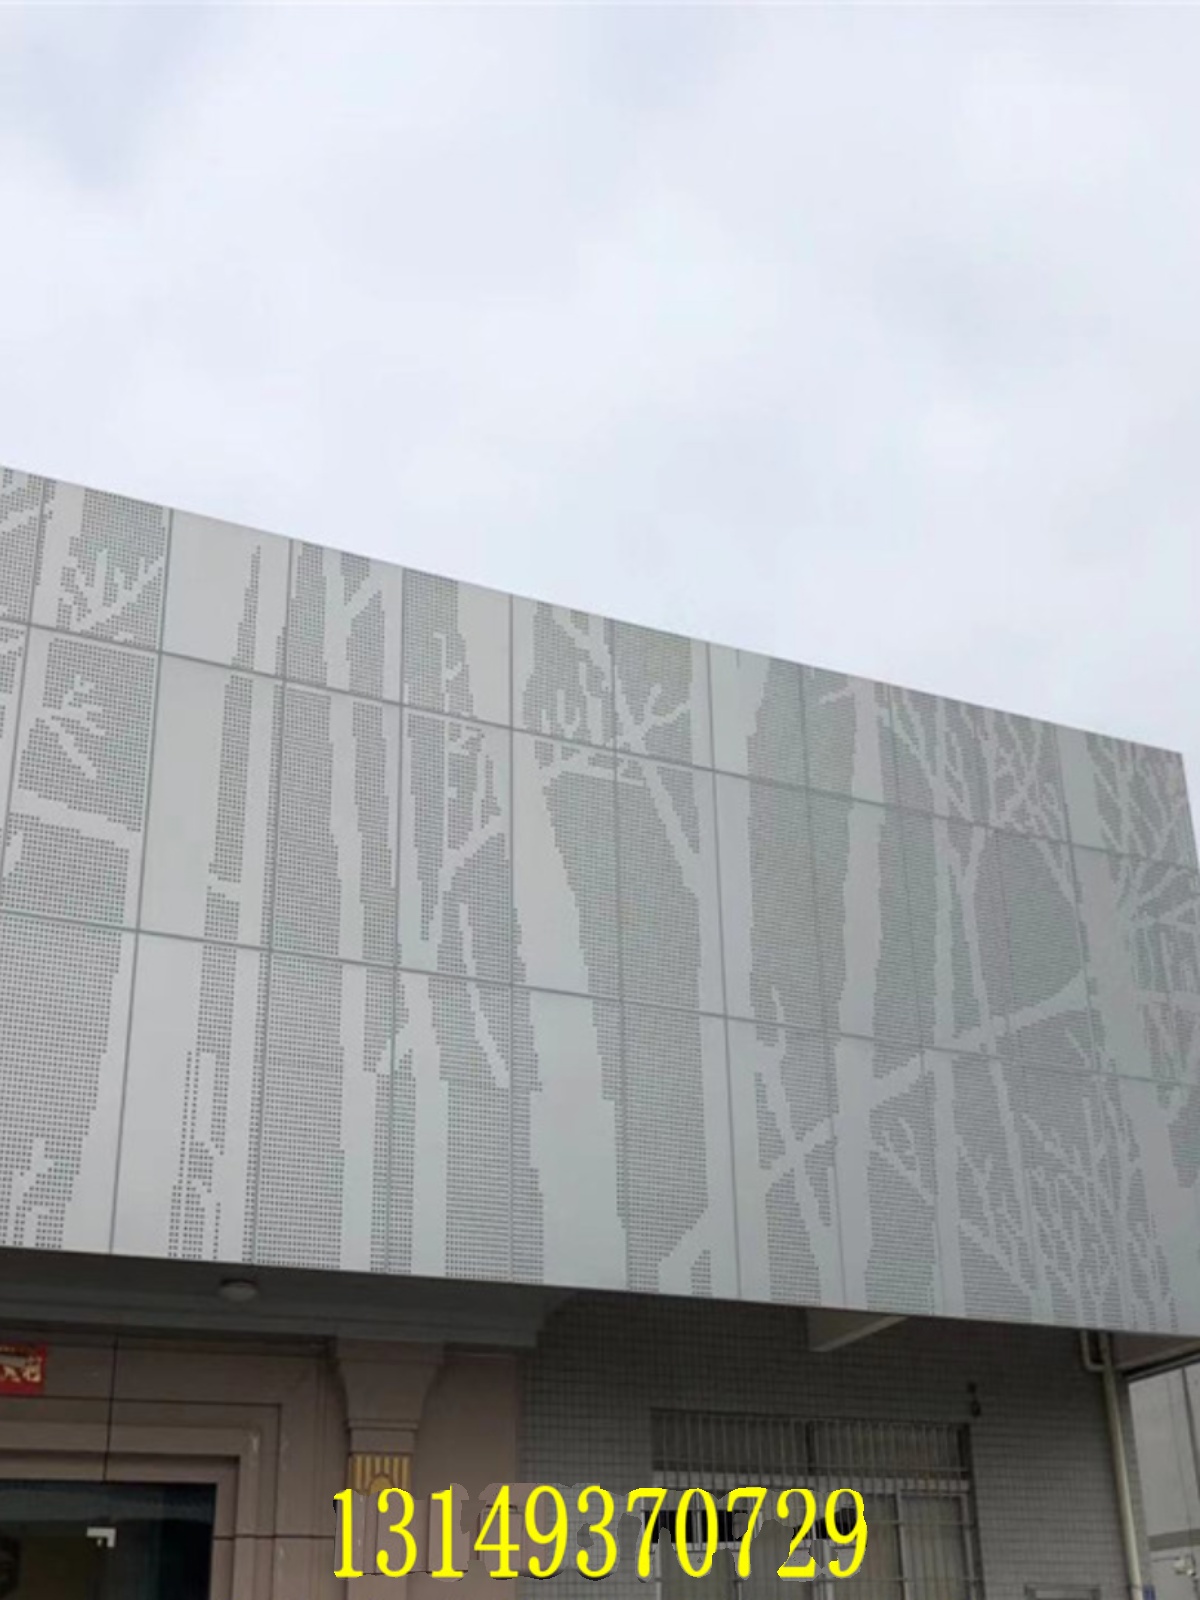 新品氟碳漆外墙山水画树形图案造型渐变大小口径冲孔铝单板幕墙厂